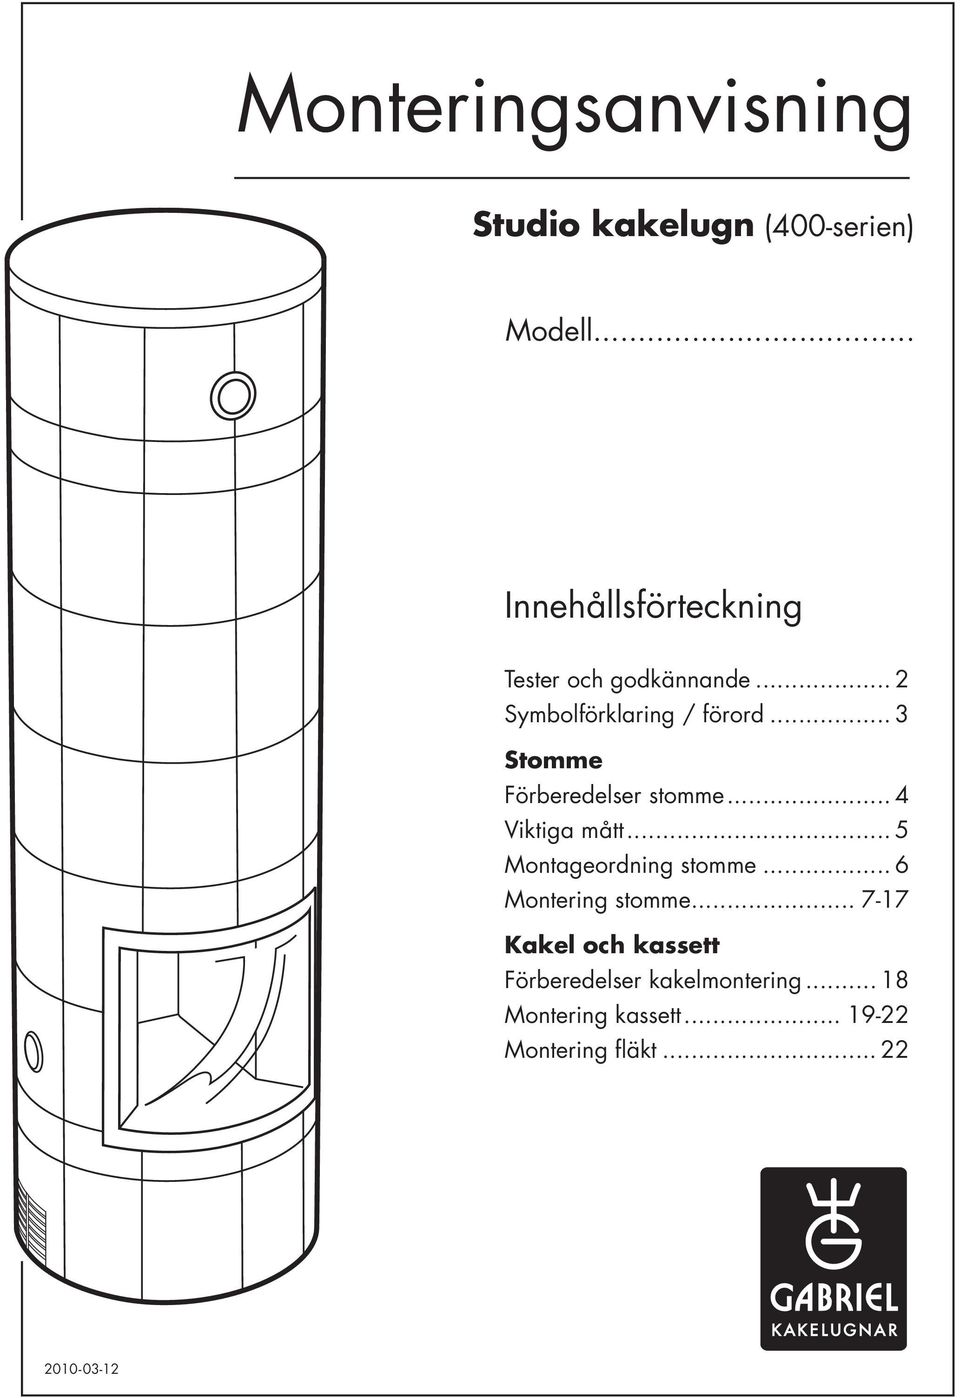 Monteringsanvisning. Innehållsförteckning. Studio kakelugn (400-serien)  Modell... - PDF Gratis nedladdning